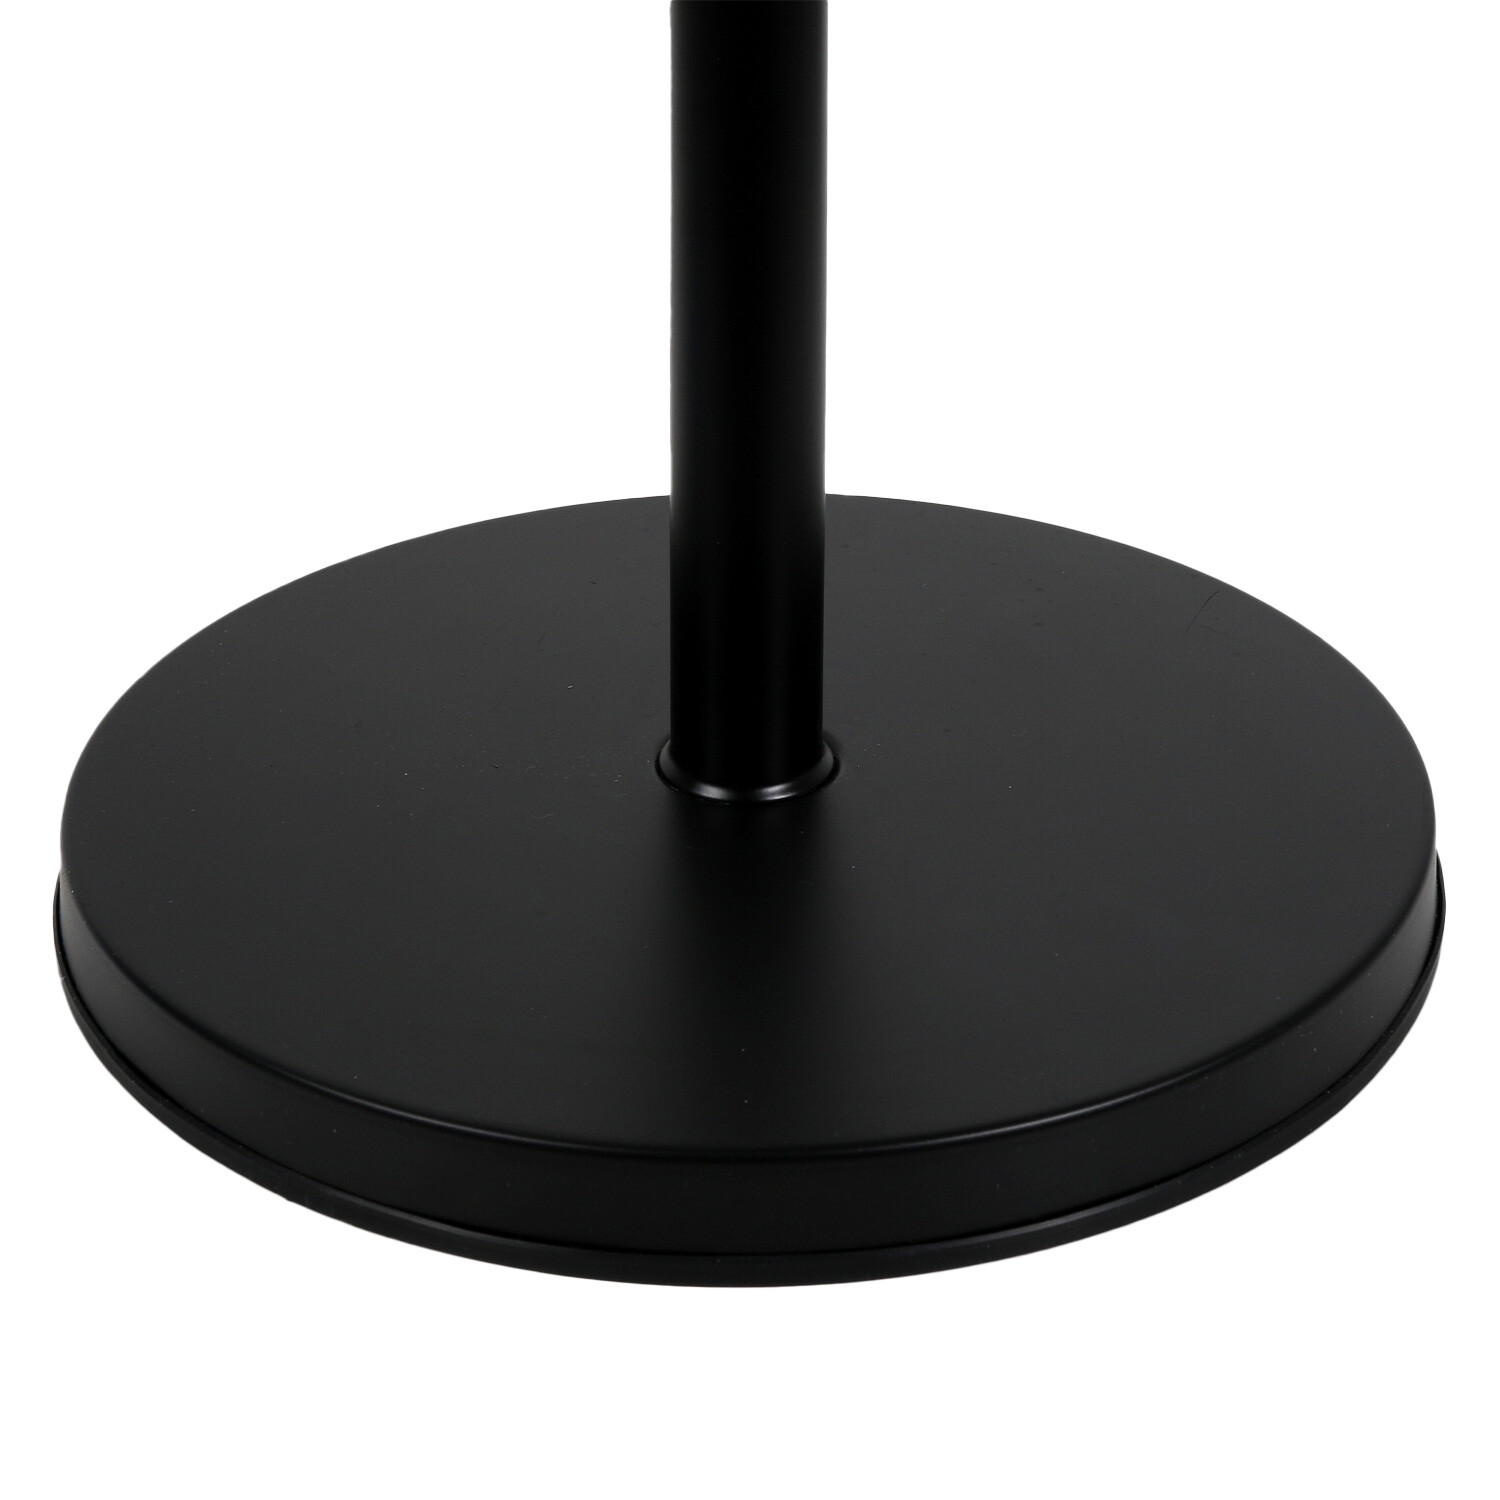 Icycool Black Metal Pedestal Fan 46cm Image 7